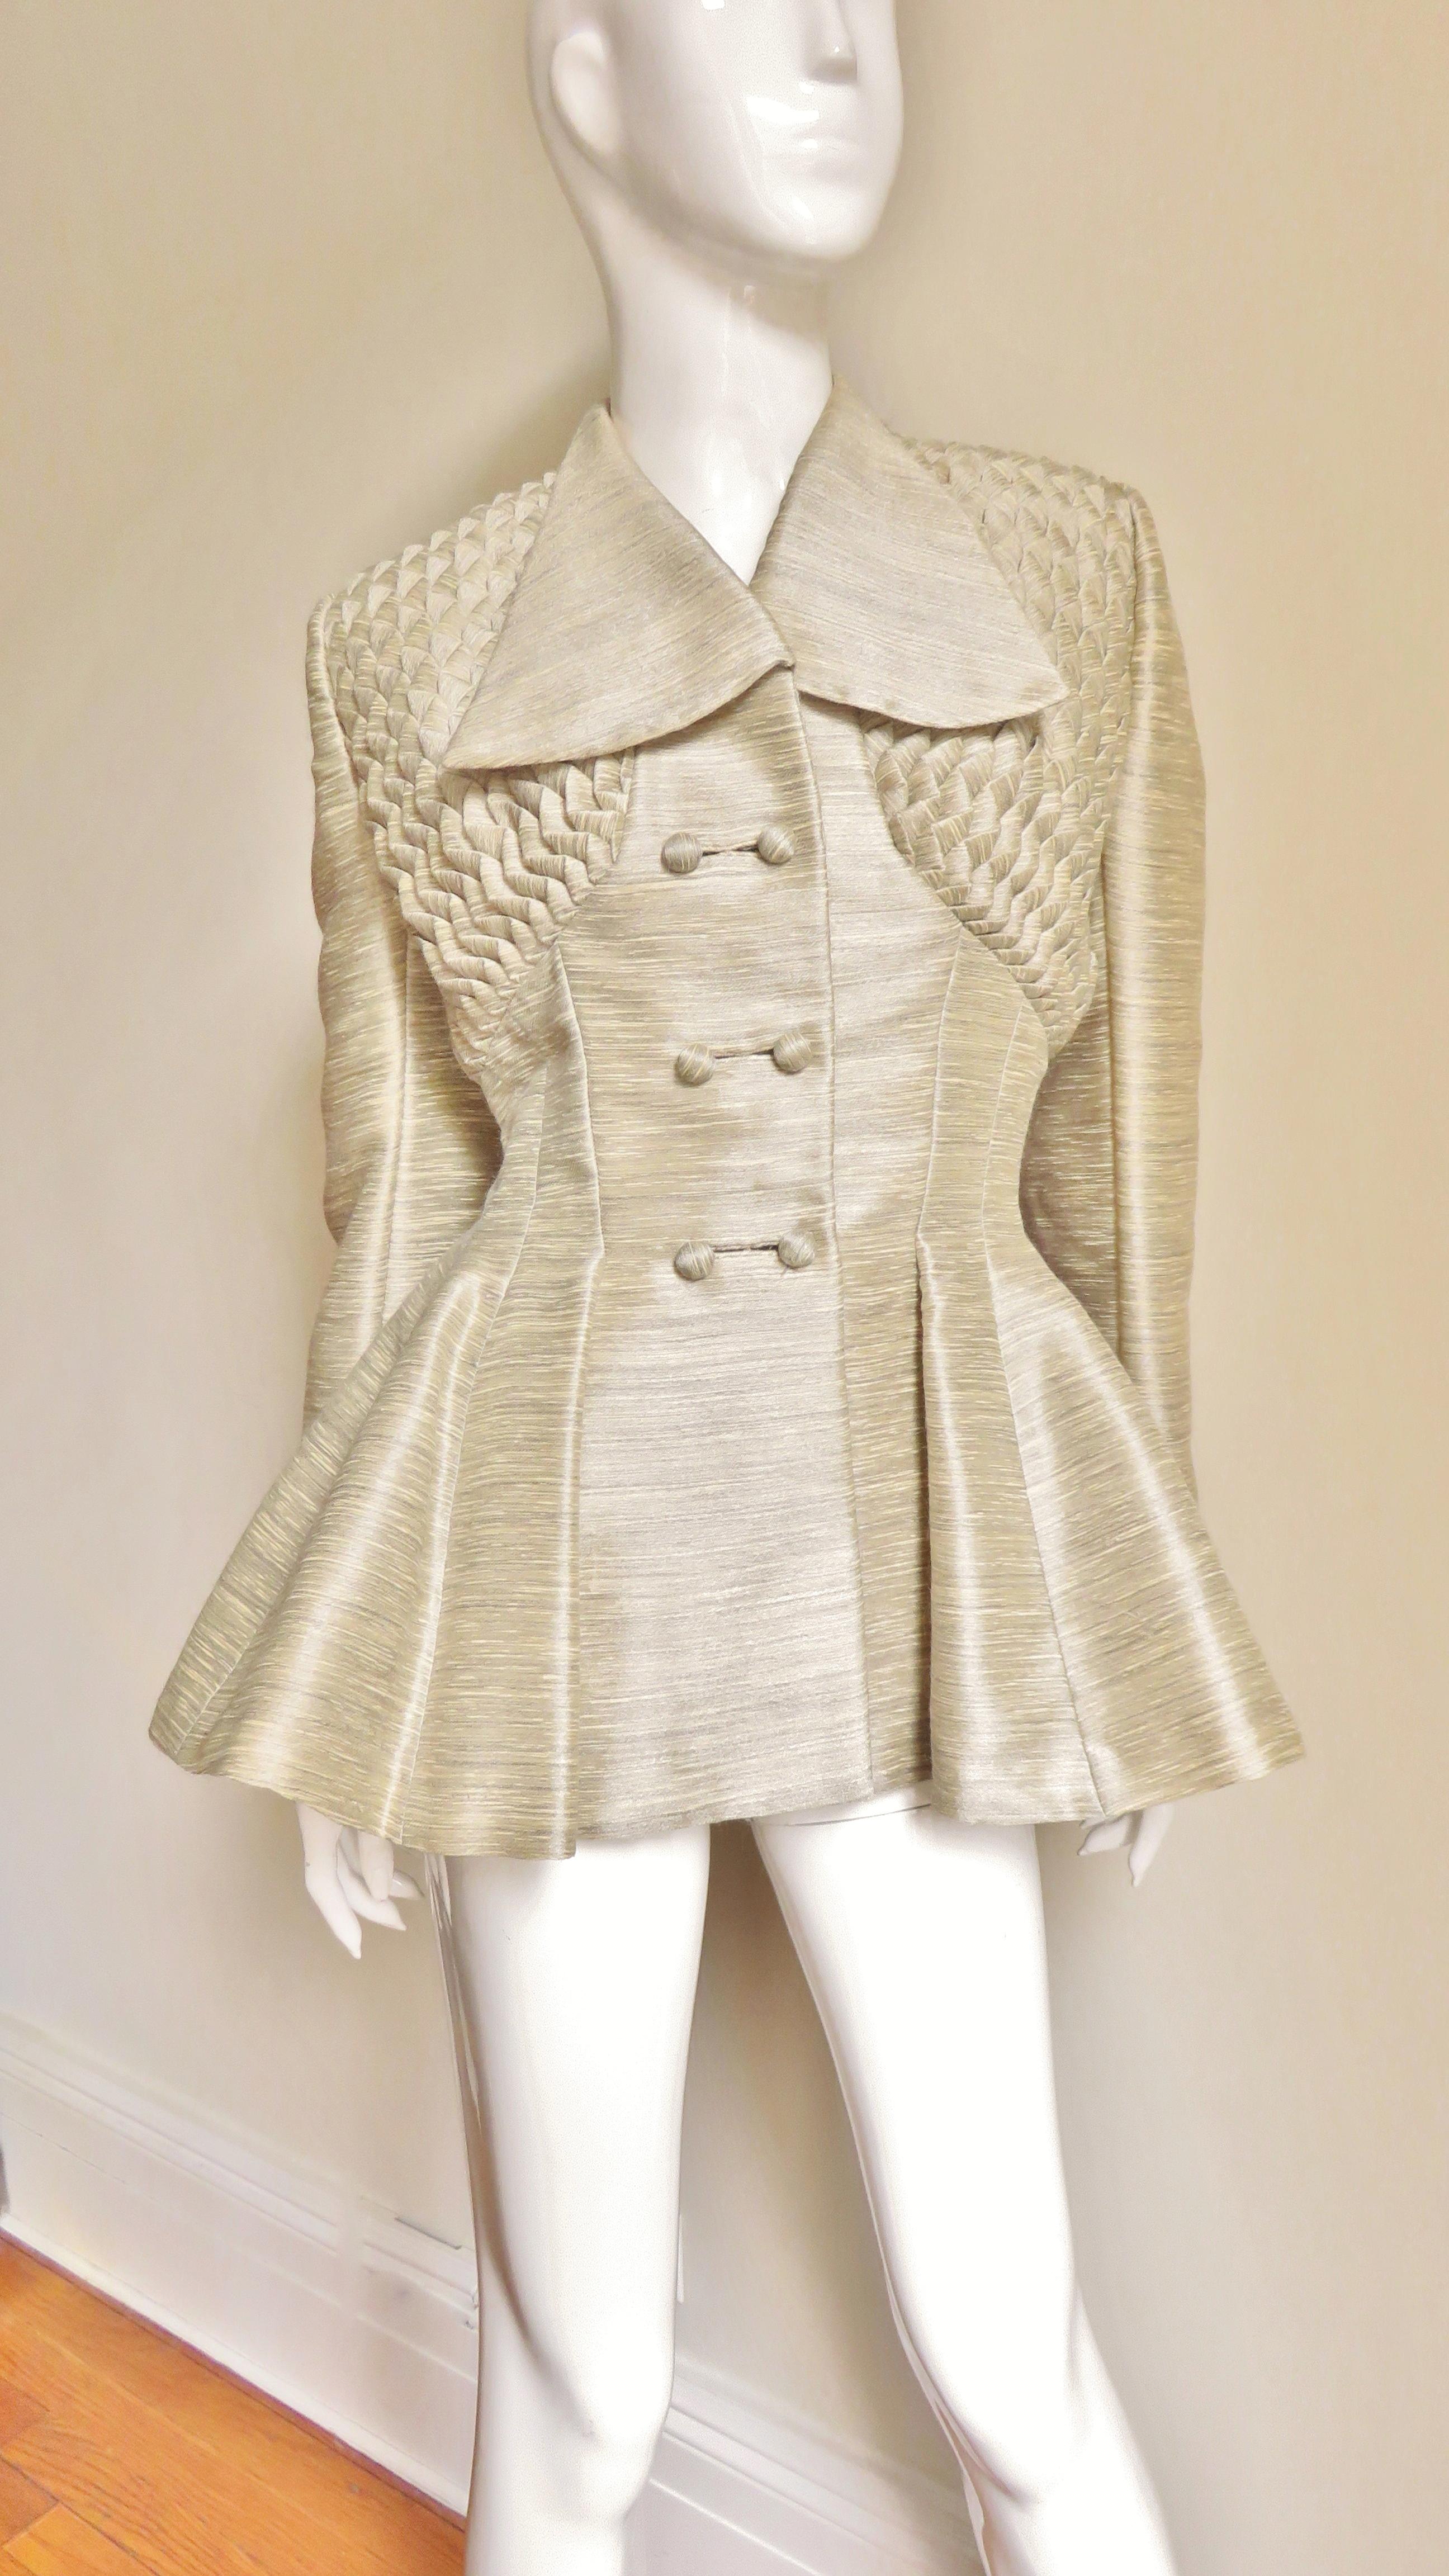 Eine fabelhafte beige-graue Jacke aus Seide und Wolle aus den 1940er Jahren von Lilli Ann.  Die doppelreihige Jacke hat einen geflügelten Kragen, lange Ärmel mit umgeschlagenen Manschetten und vorne selbst bezogene Kugelknöpfe mit gebundenen